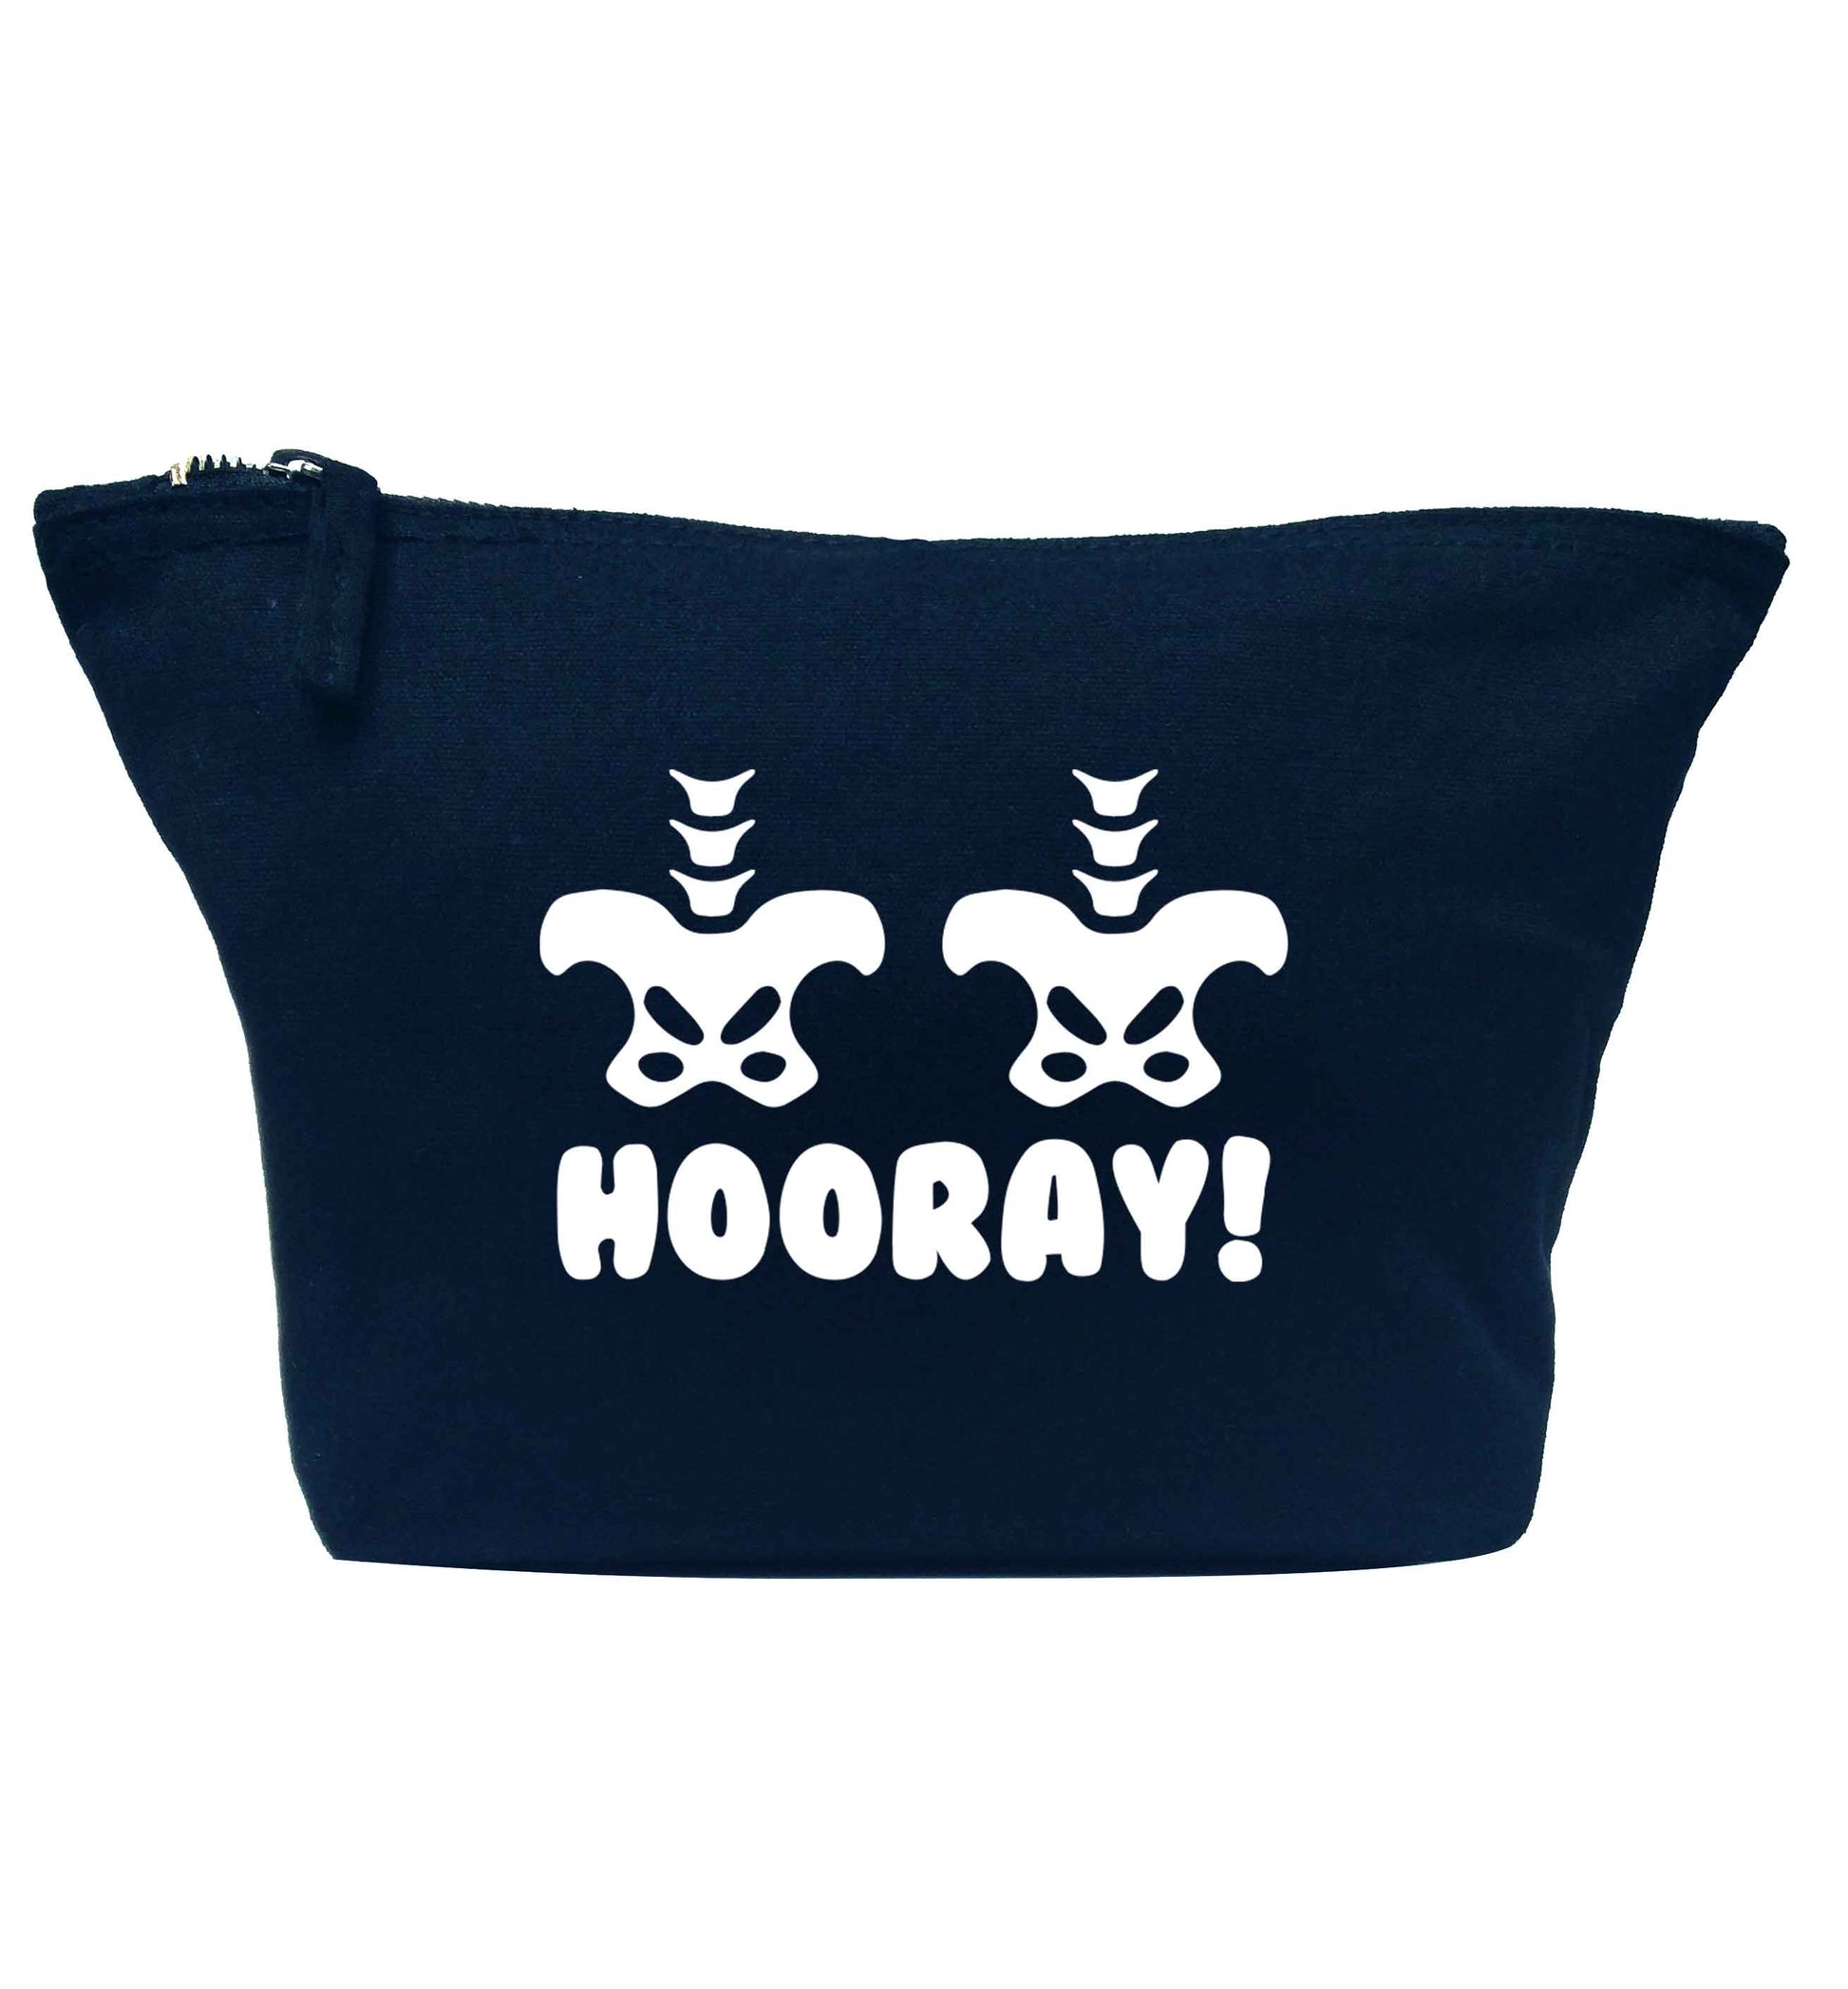 Hip Hip Hooray! navy makeup bag